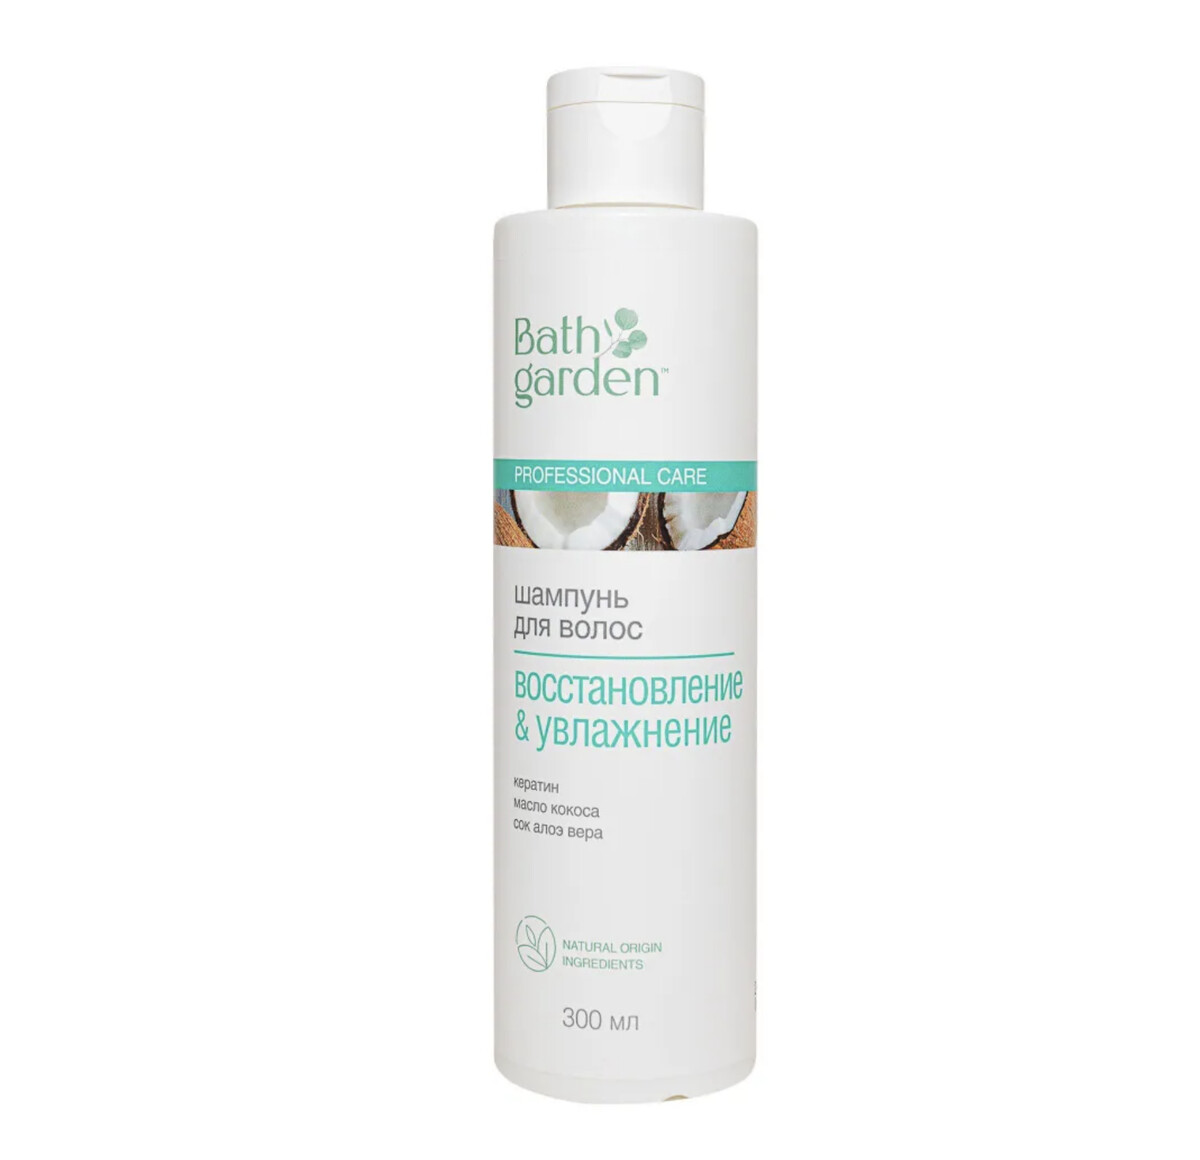 Bath garden шампунь для волос восстановление & увлажнение, 300мл шампунь для волос гладкость и увлажнение